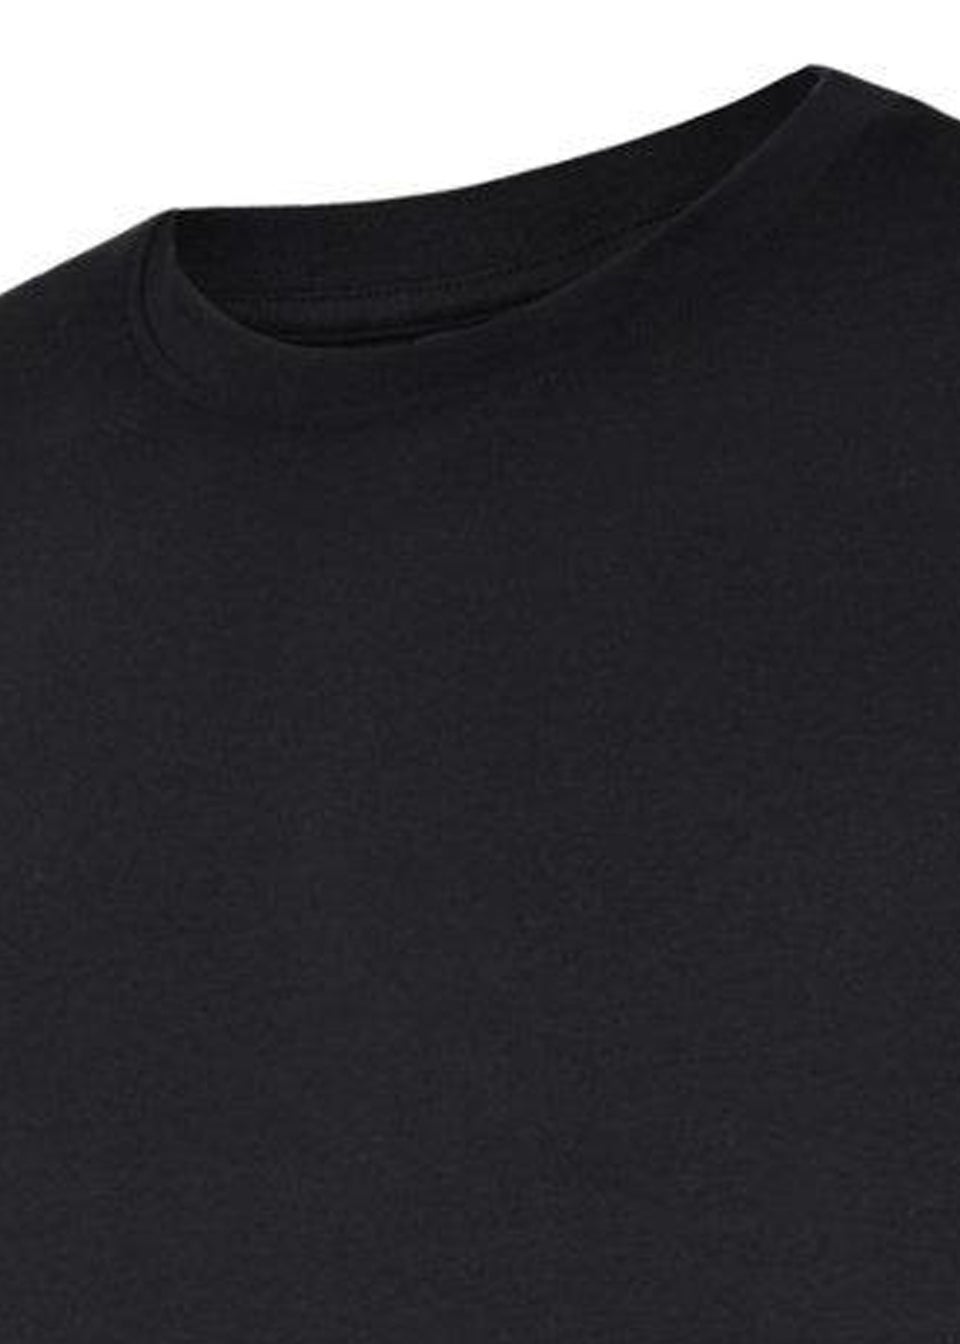 Umbro Kids Black/White Club Leisure T-Shirt (7-10yrs)